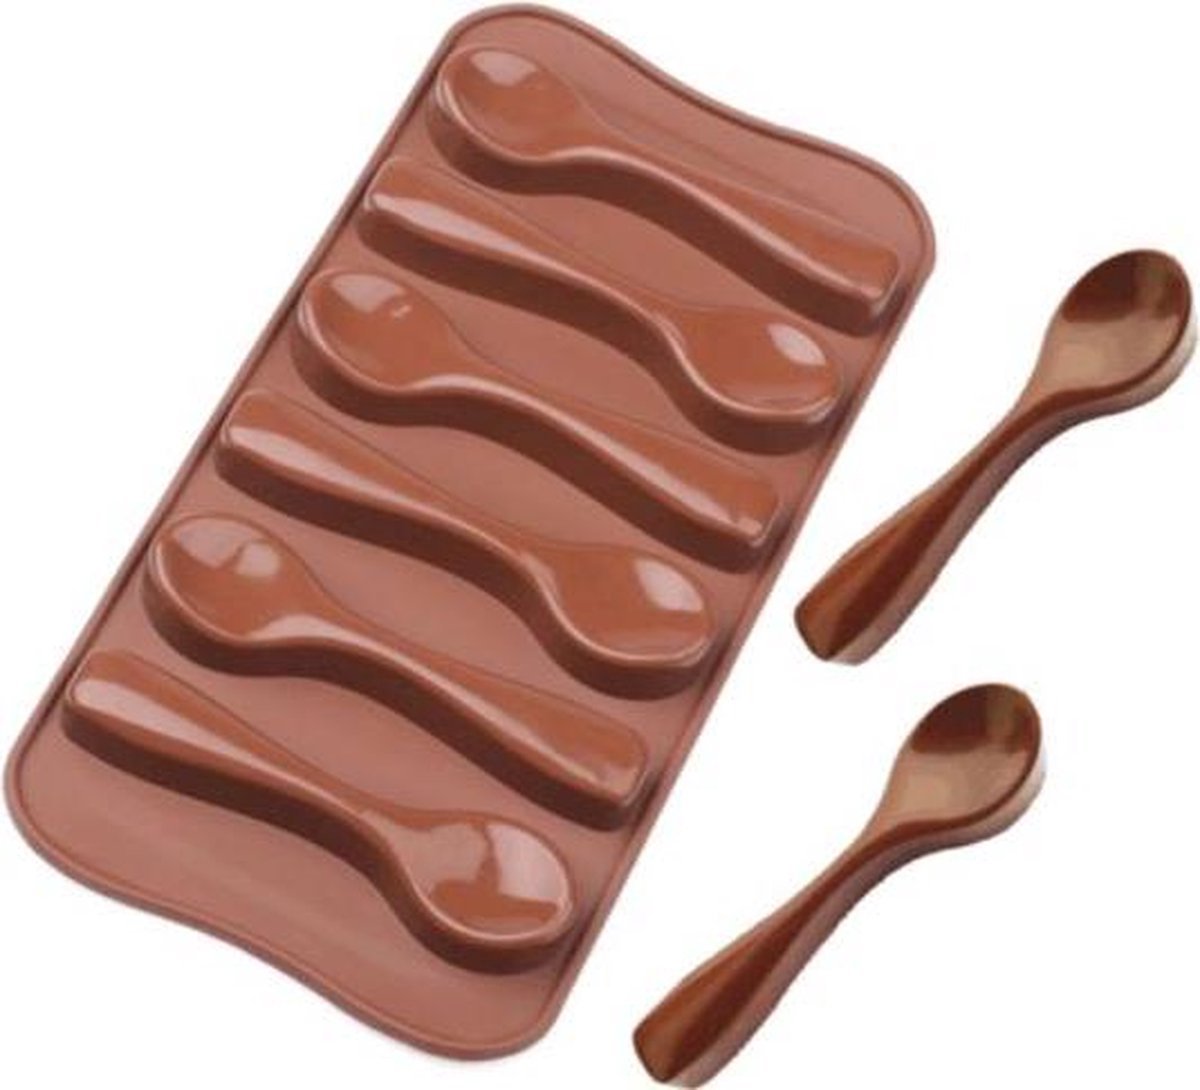 Akyol - Chocolade Lepel - siliconen vorm voor ijsblokjes chocolade fondant - Bakken - Keukenaccessoires -siliconen chocolade lepel- - Koken - Chef - Taarten - Cadeau - Chocolate spoon